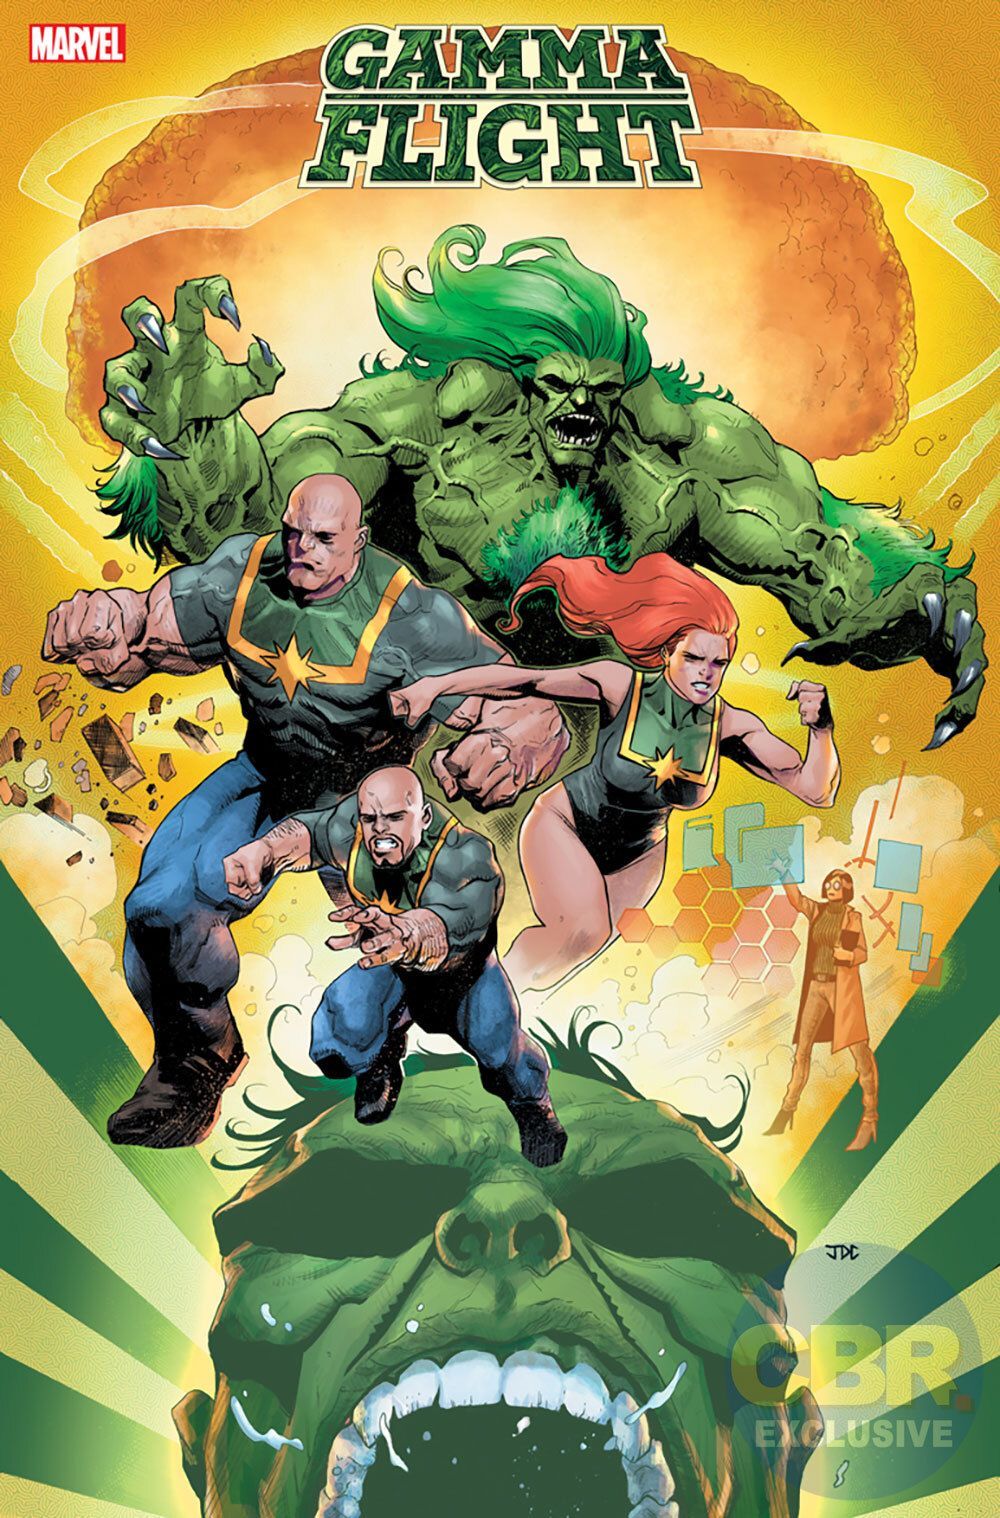 Το εξώφυλλο Vammant Flight Gamma στέλνει τους εκρηκτικούς συμμάχους του Hulk στο τρέξιμο (αποκλειστικό)